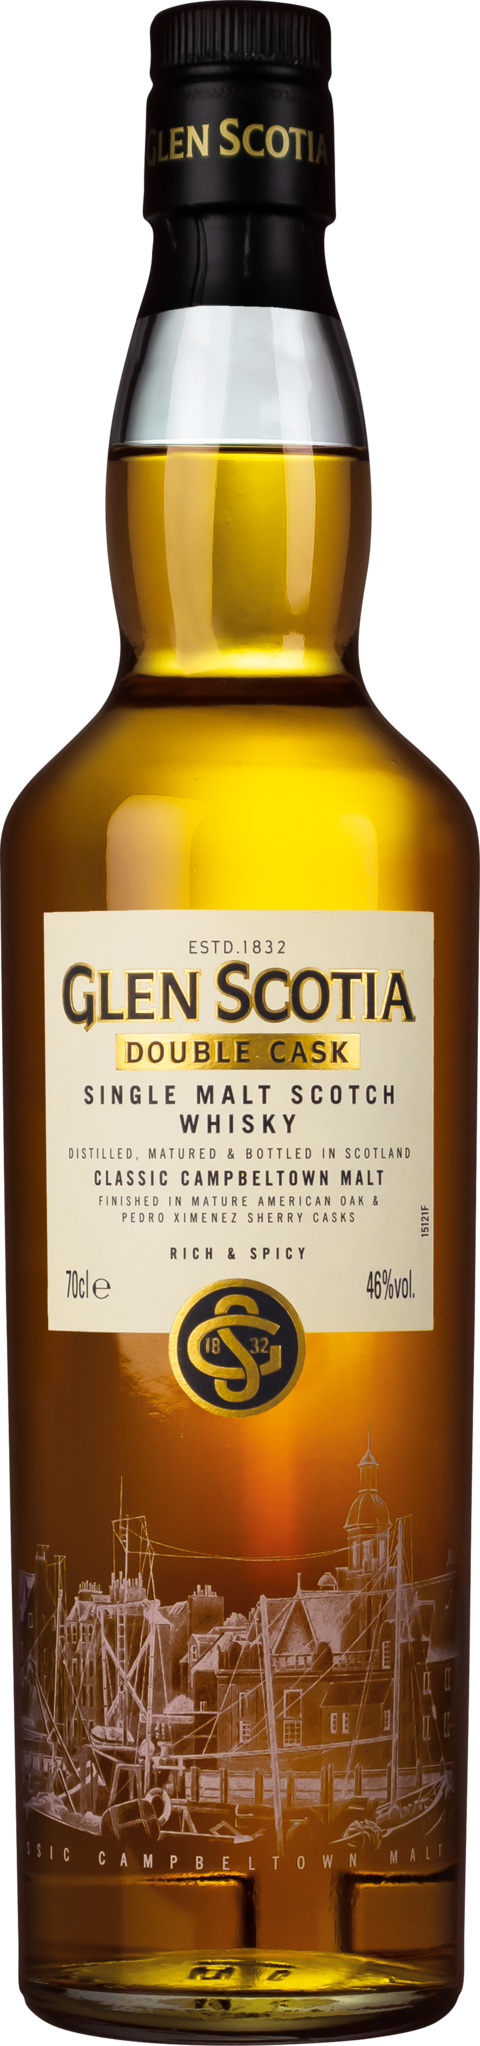 Glen Scotia Double Cask - PX Cask 46 %